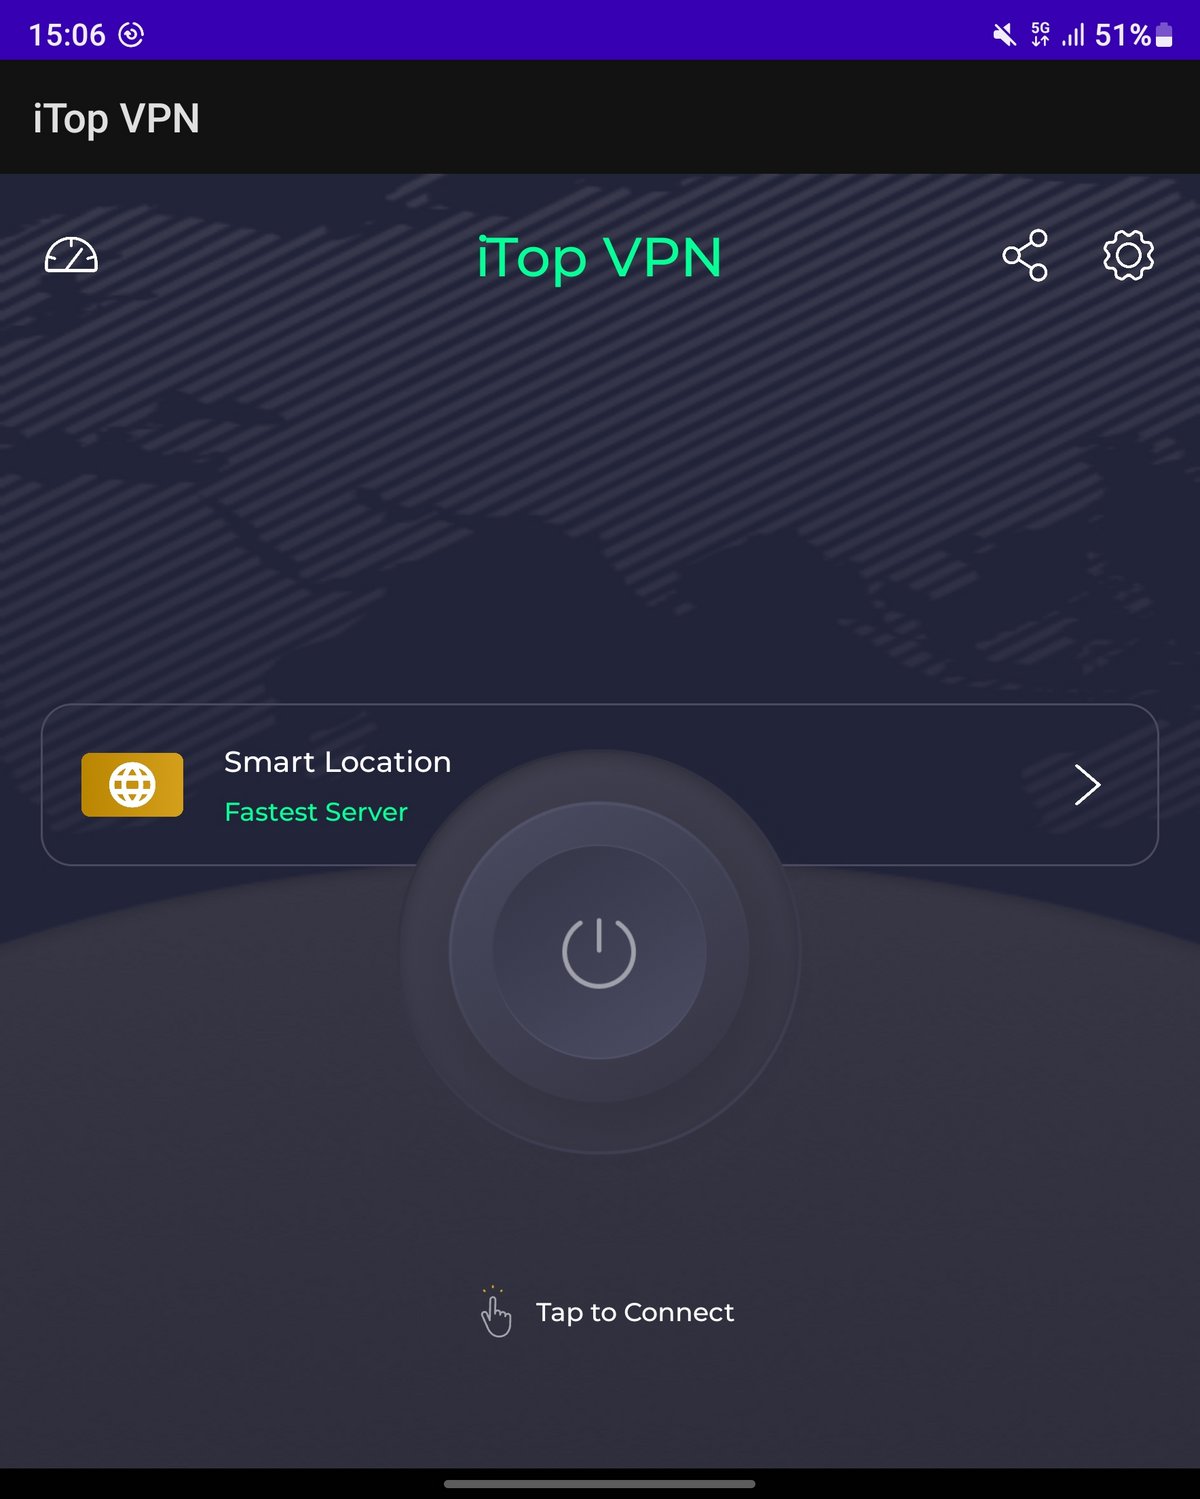 iTop VPN android © Benoit Baylé